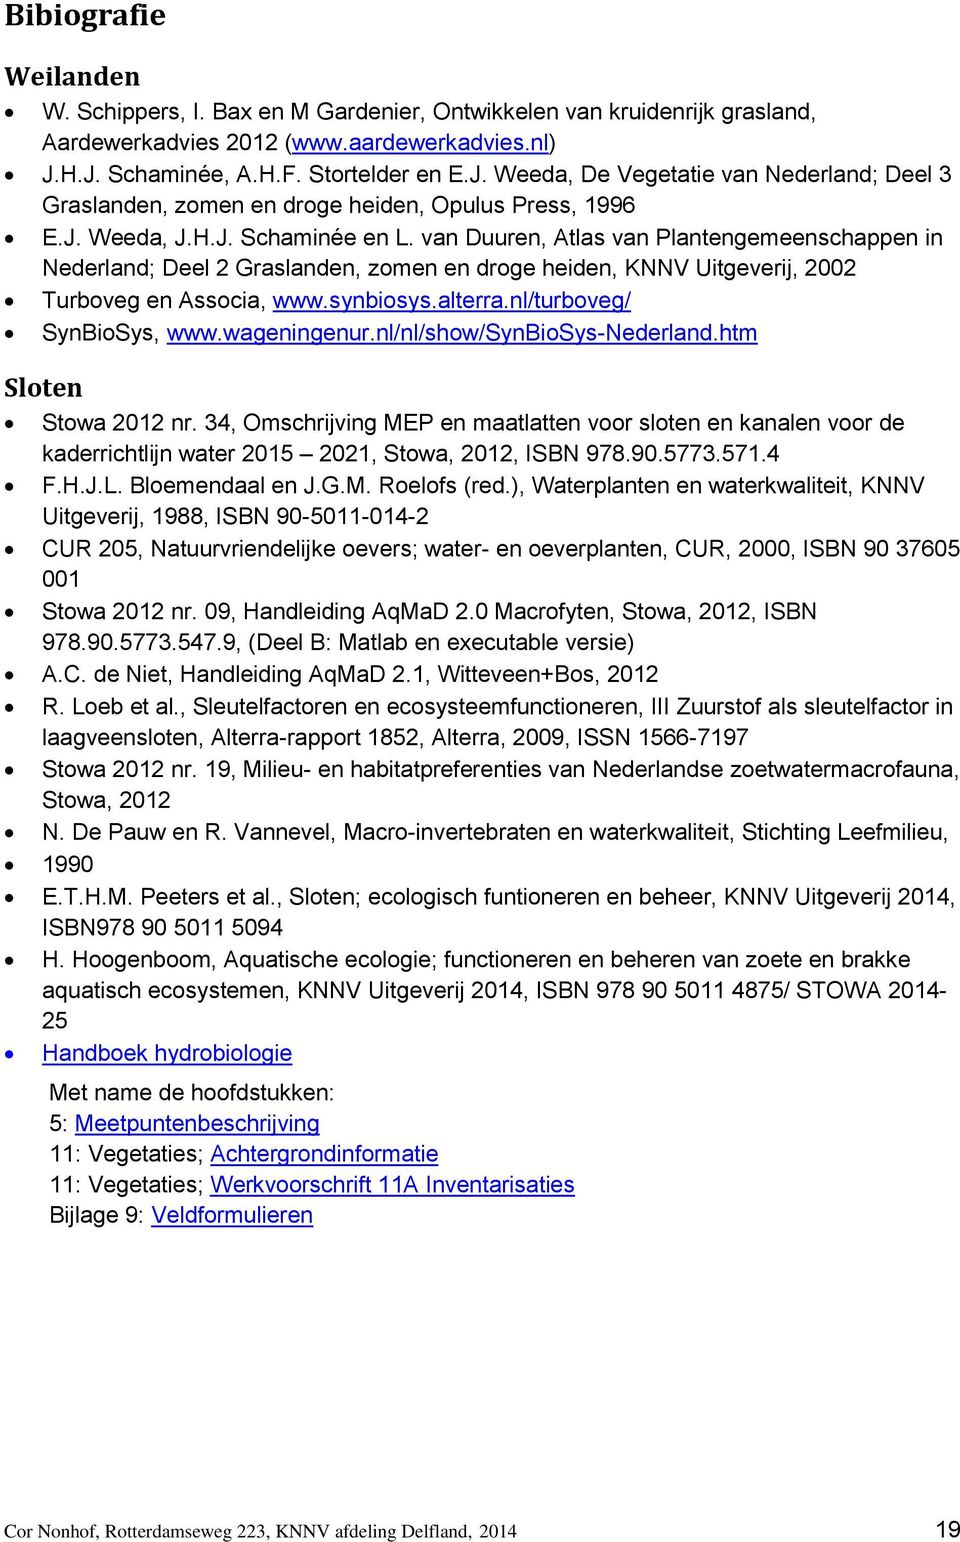 van Duuren, Atlas van Plantengemeenschappen in Nederland; Deel 2 Graslanden, zomen en droge heiden, KNNV Uitgeverij, 2002 Turboveg en Associa, www.synbiosys.alterra.nl/turboveg/ SynBioSys, www.